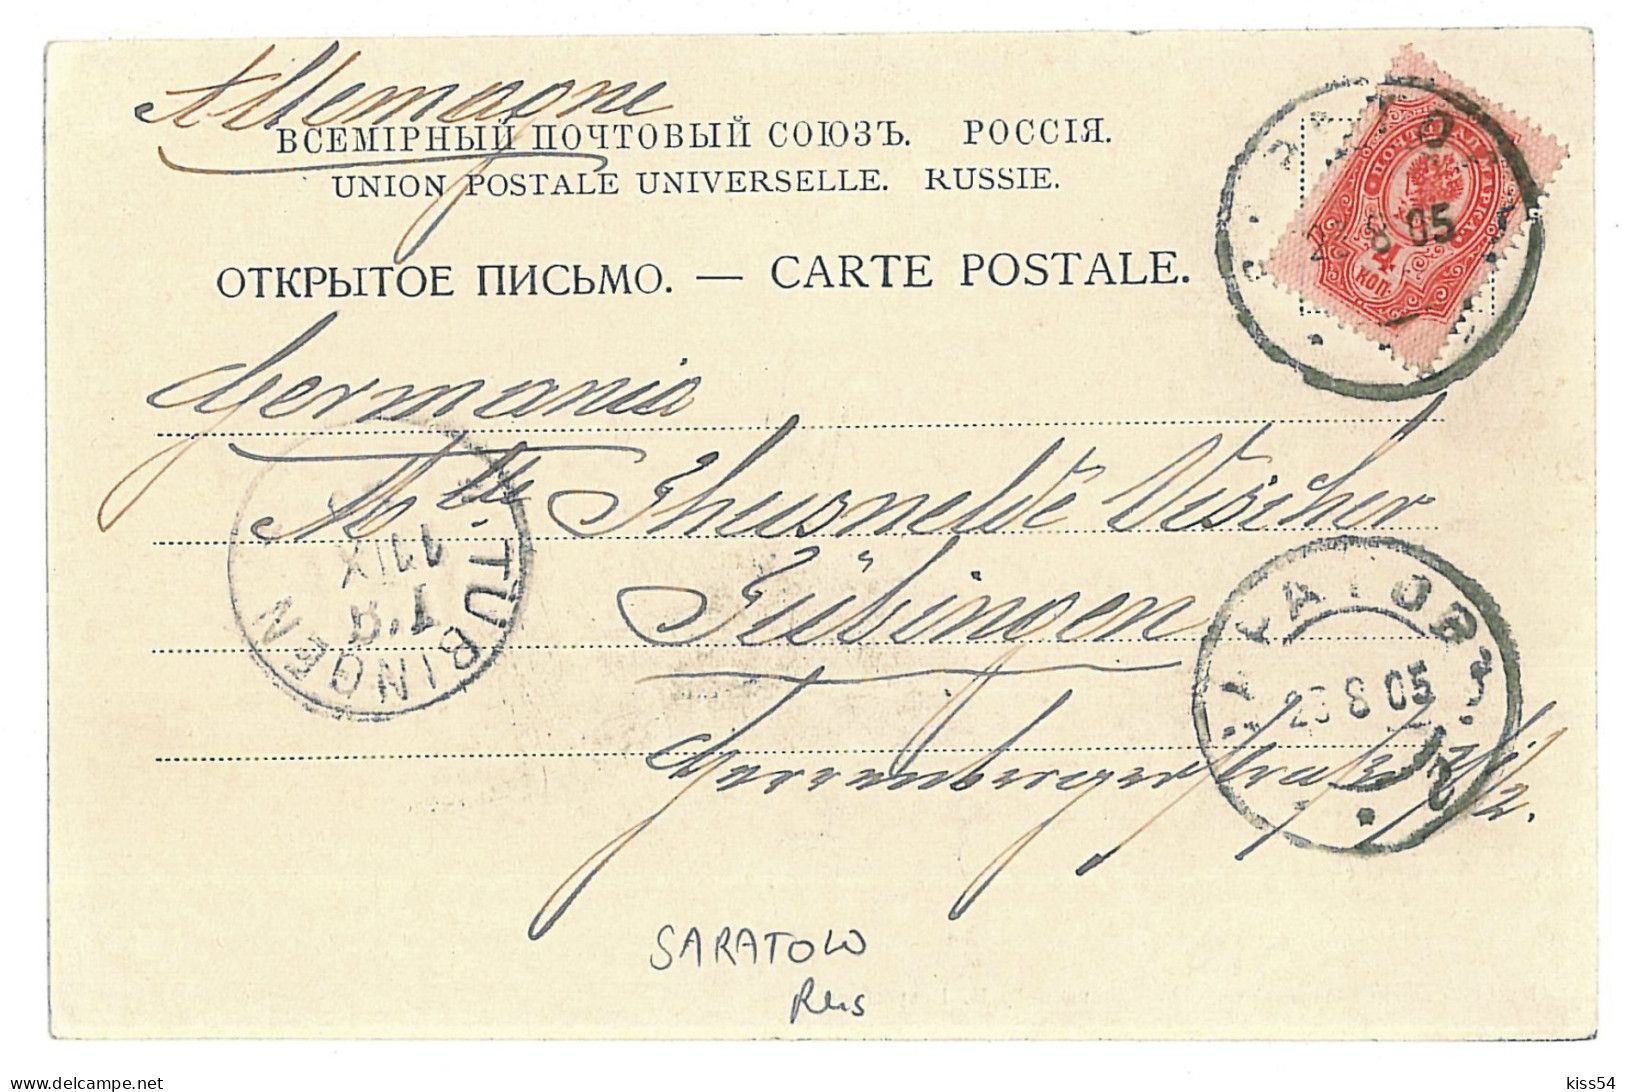 RUS 53 - 9926 SARATOV, Russia - Old Postcard - Used - 1905 - Rusland